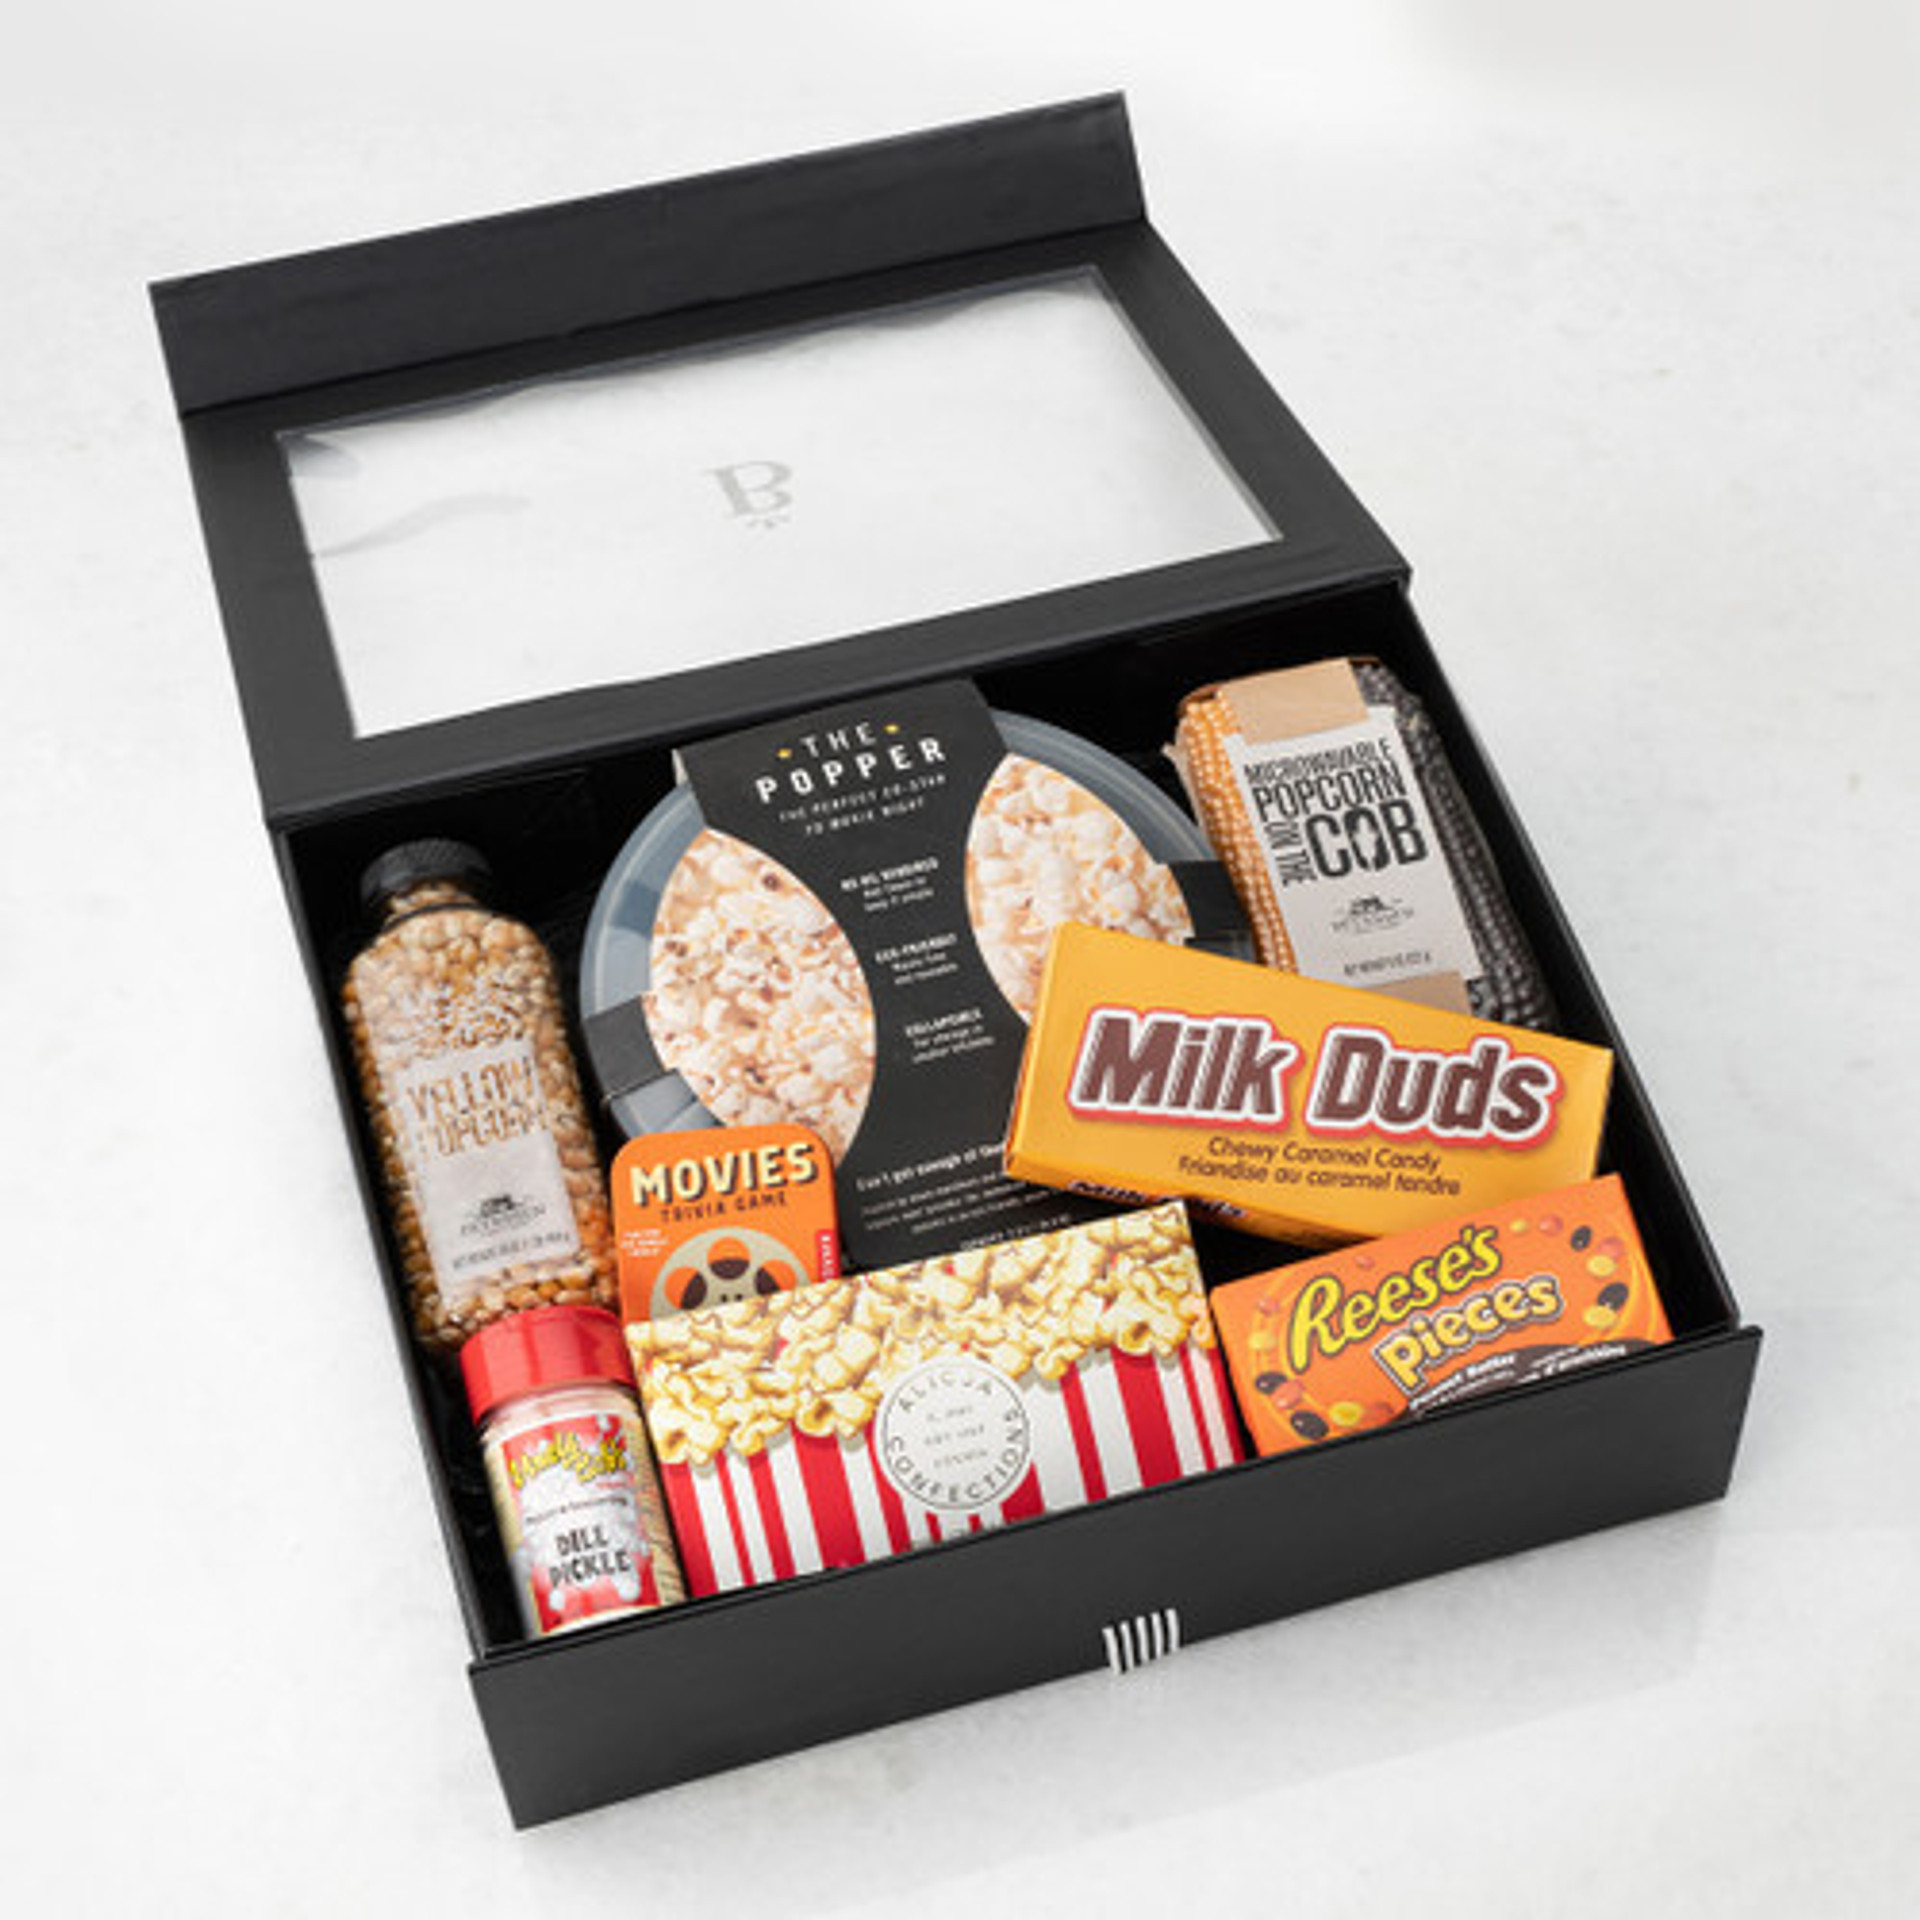 Movie night gift box